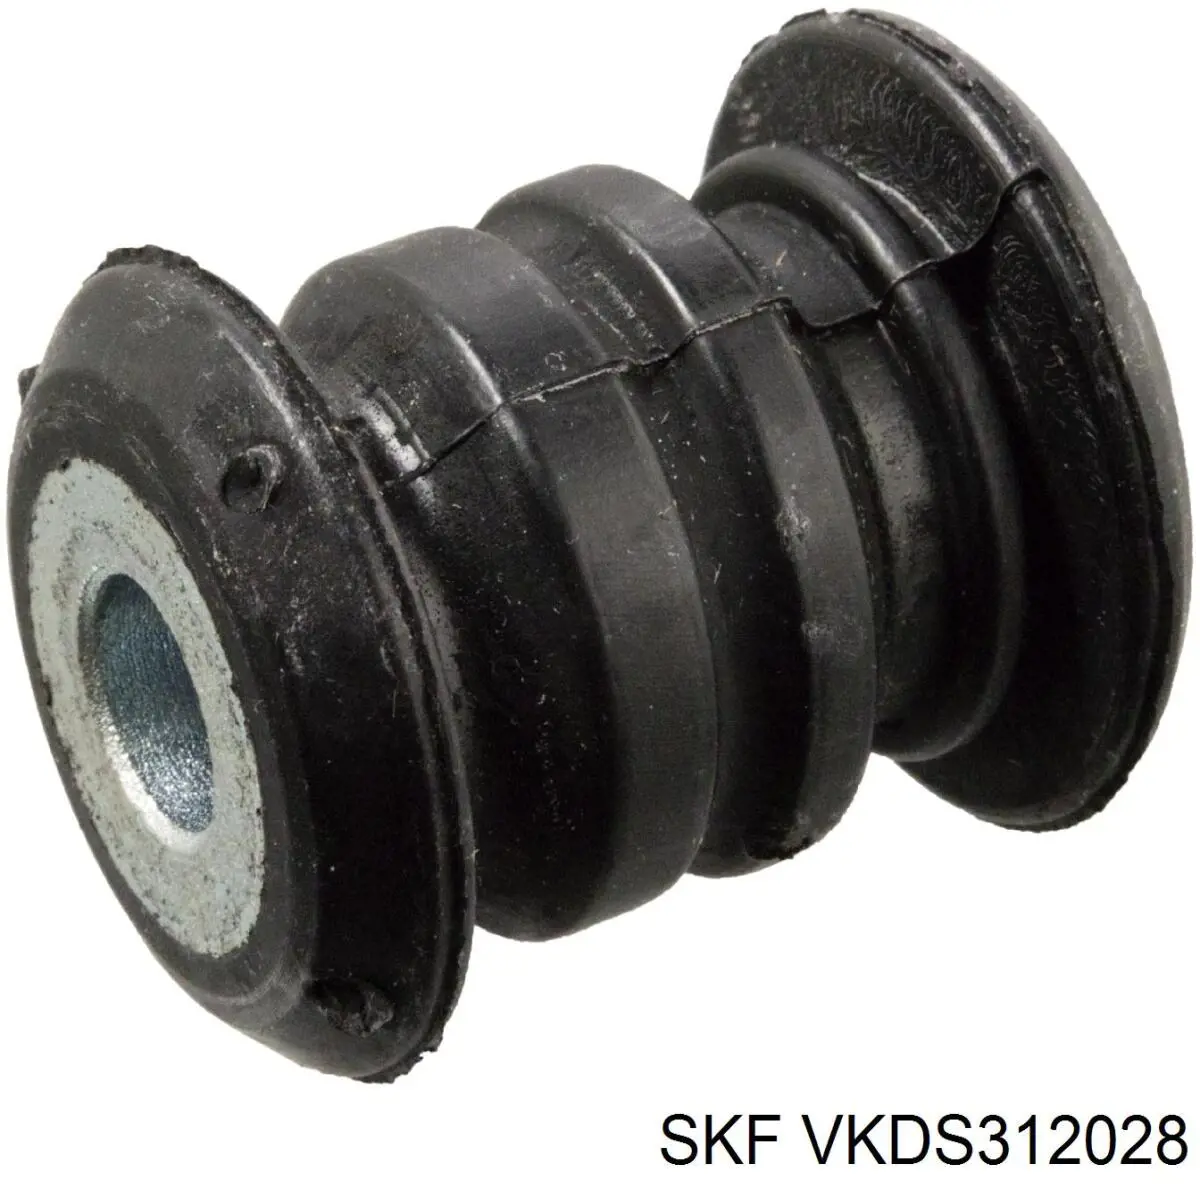 VKDS 312028 SKF rótula de suspensión inferior